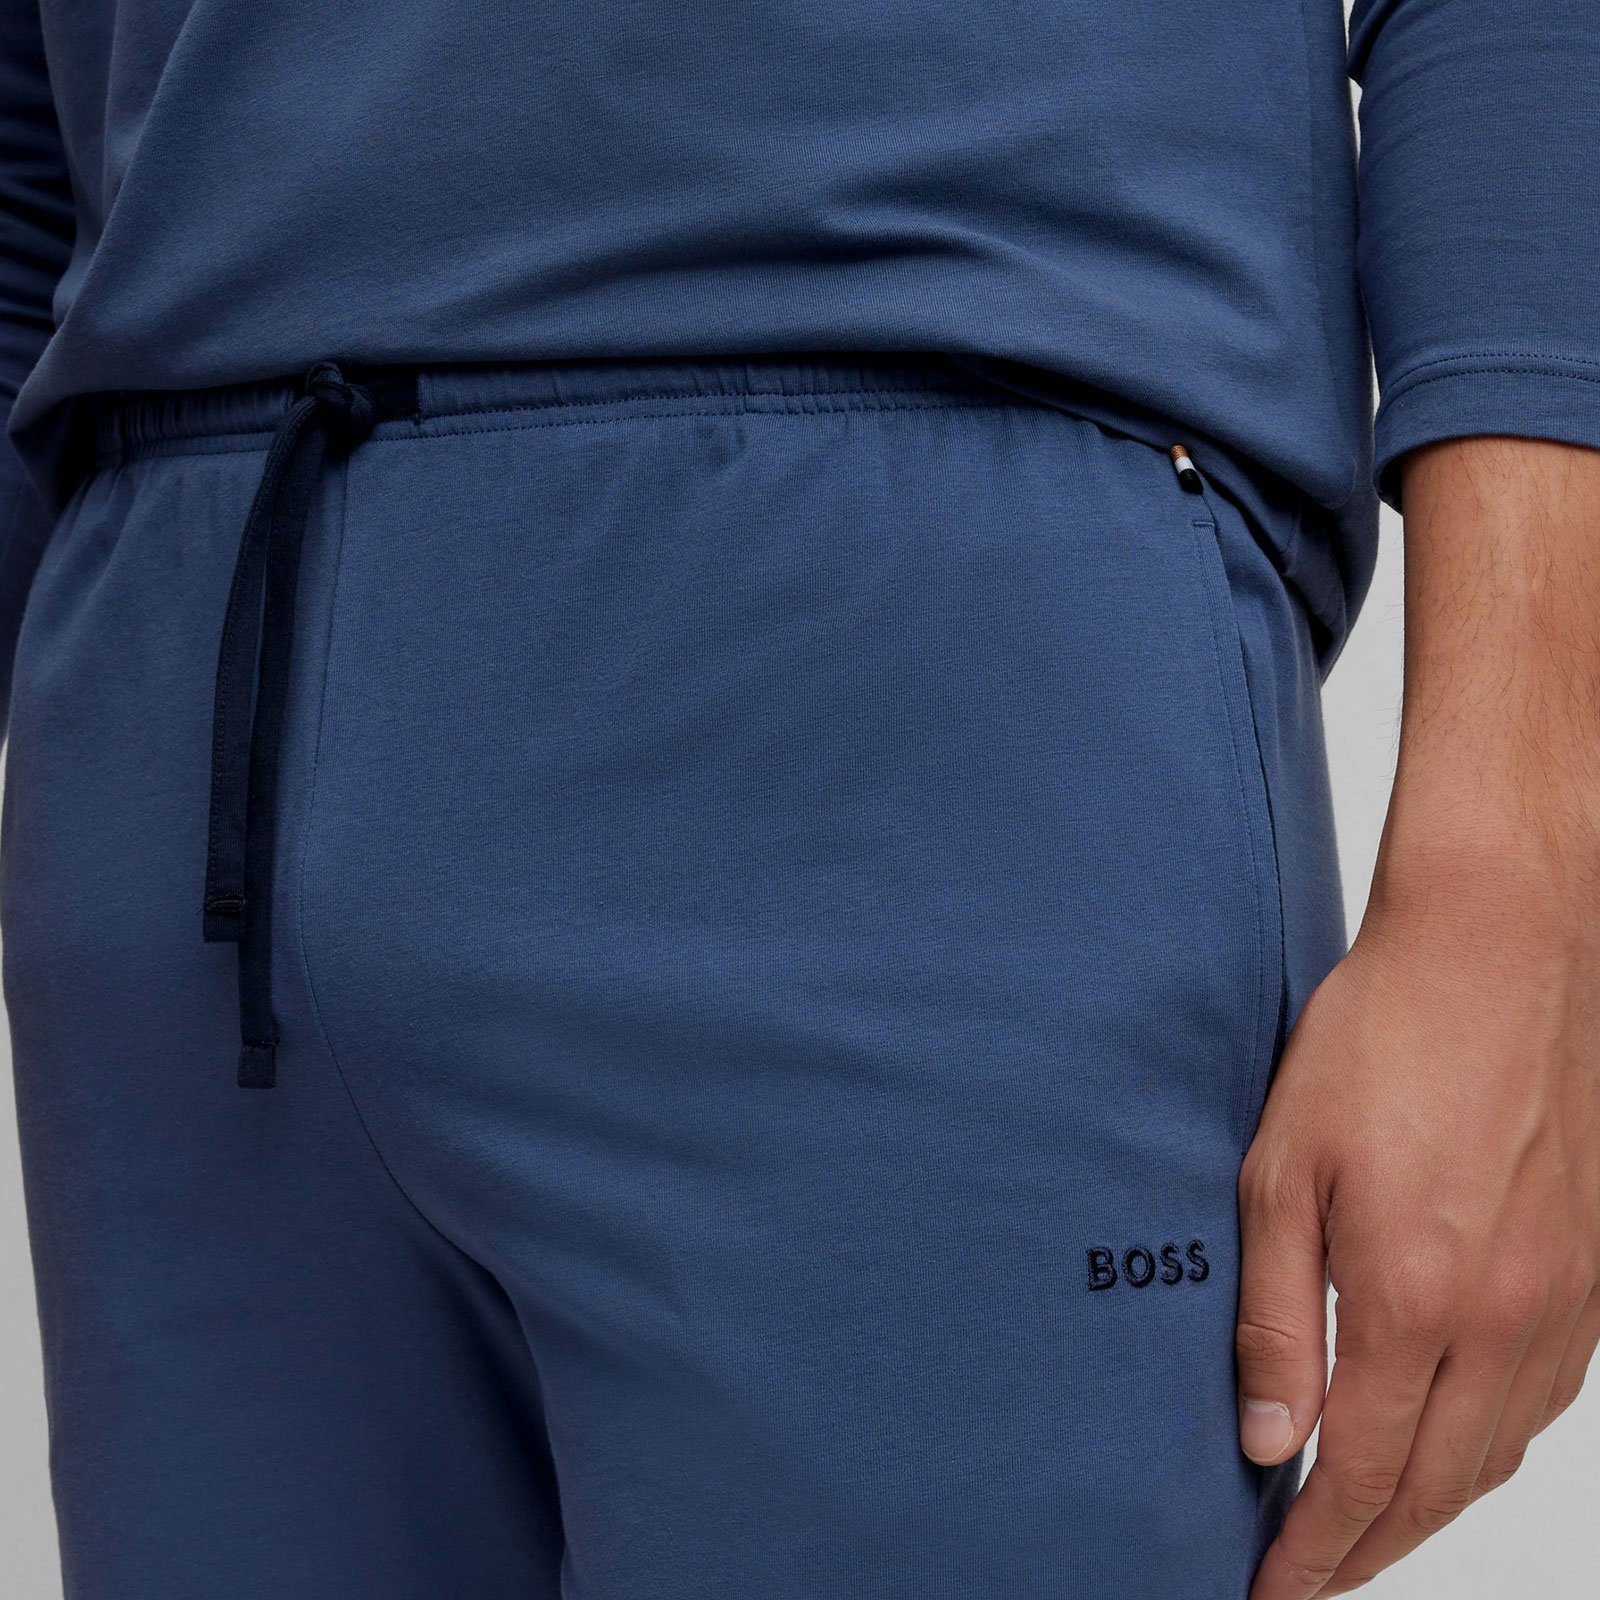 BOSS Shorts Mix&Match Short gesticktem open blue mit CW 475 Markenlogo